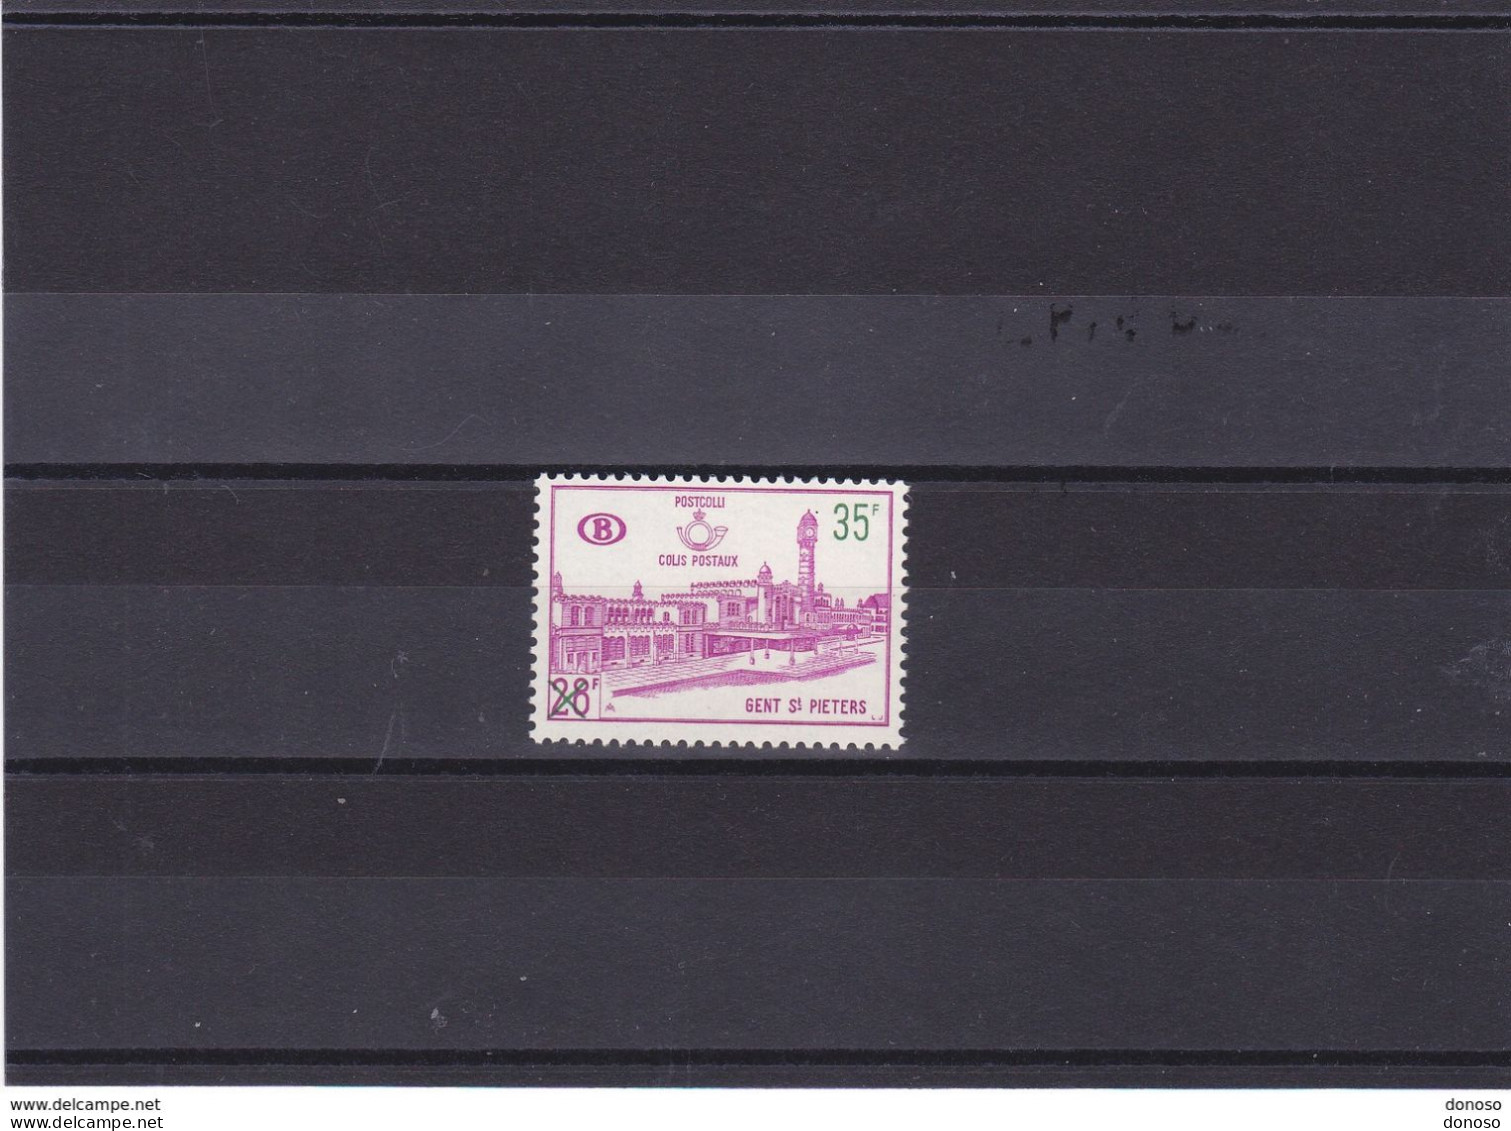 BELGIQUE 1966 GARE DE GAND Yvert 377 NEUF** MNH Cote 6 Euros - Nuovi